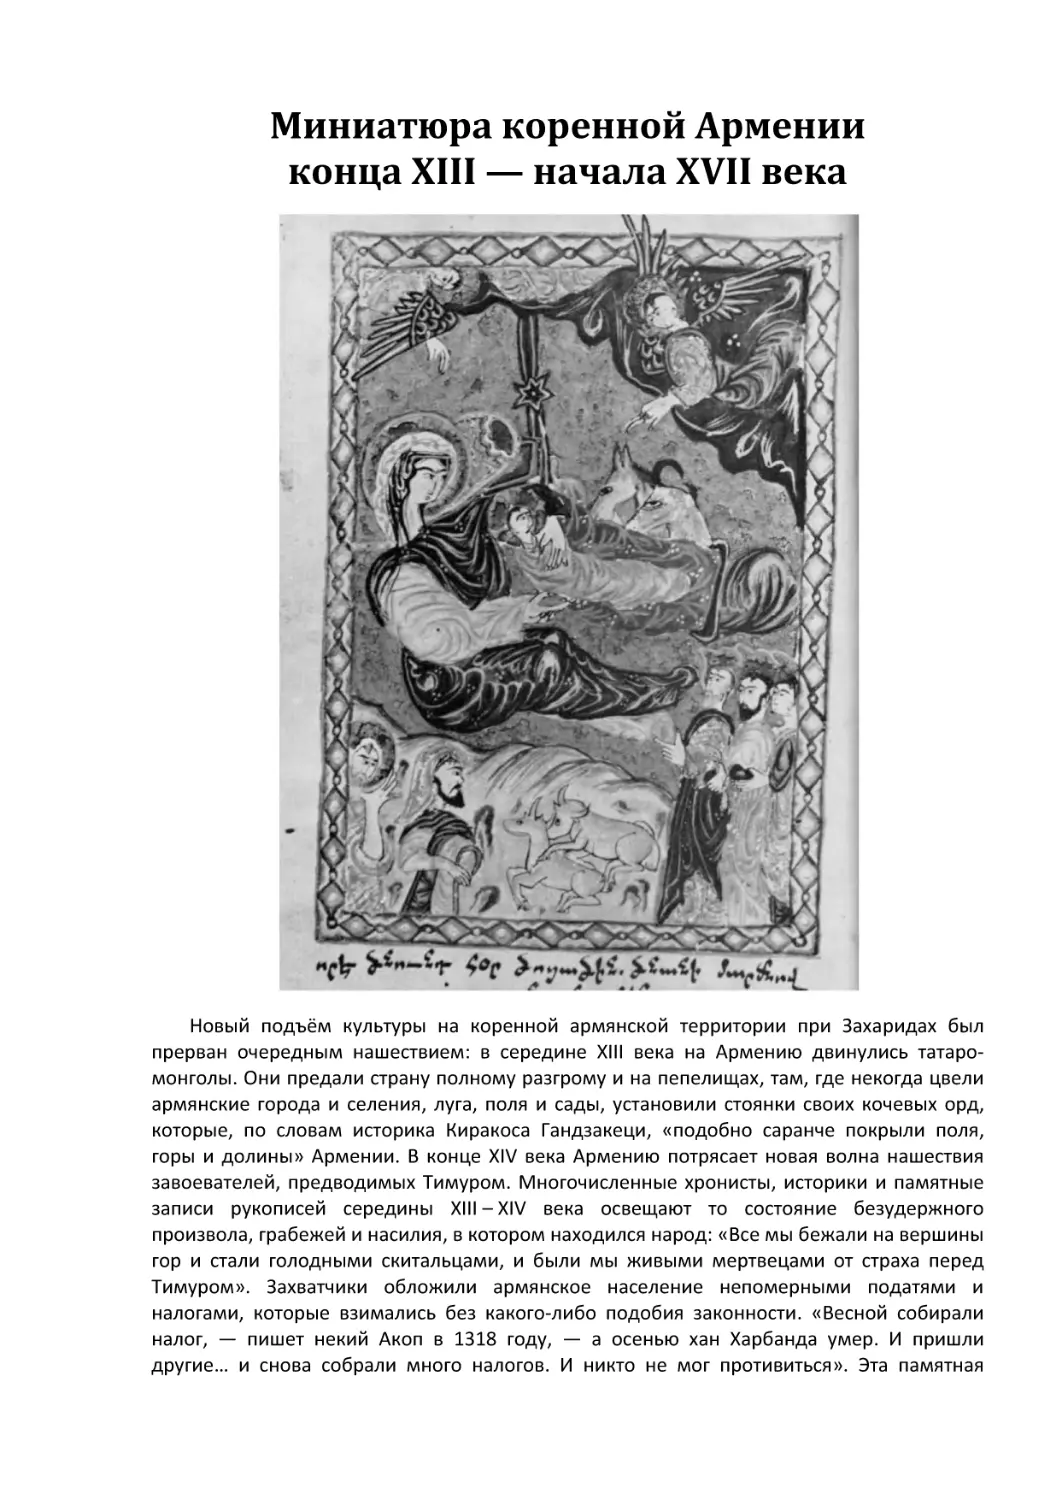 Миниатюра коренной Армении конца XIII - начала XVII века